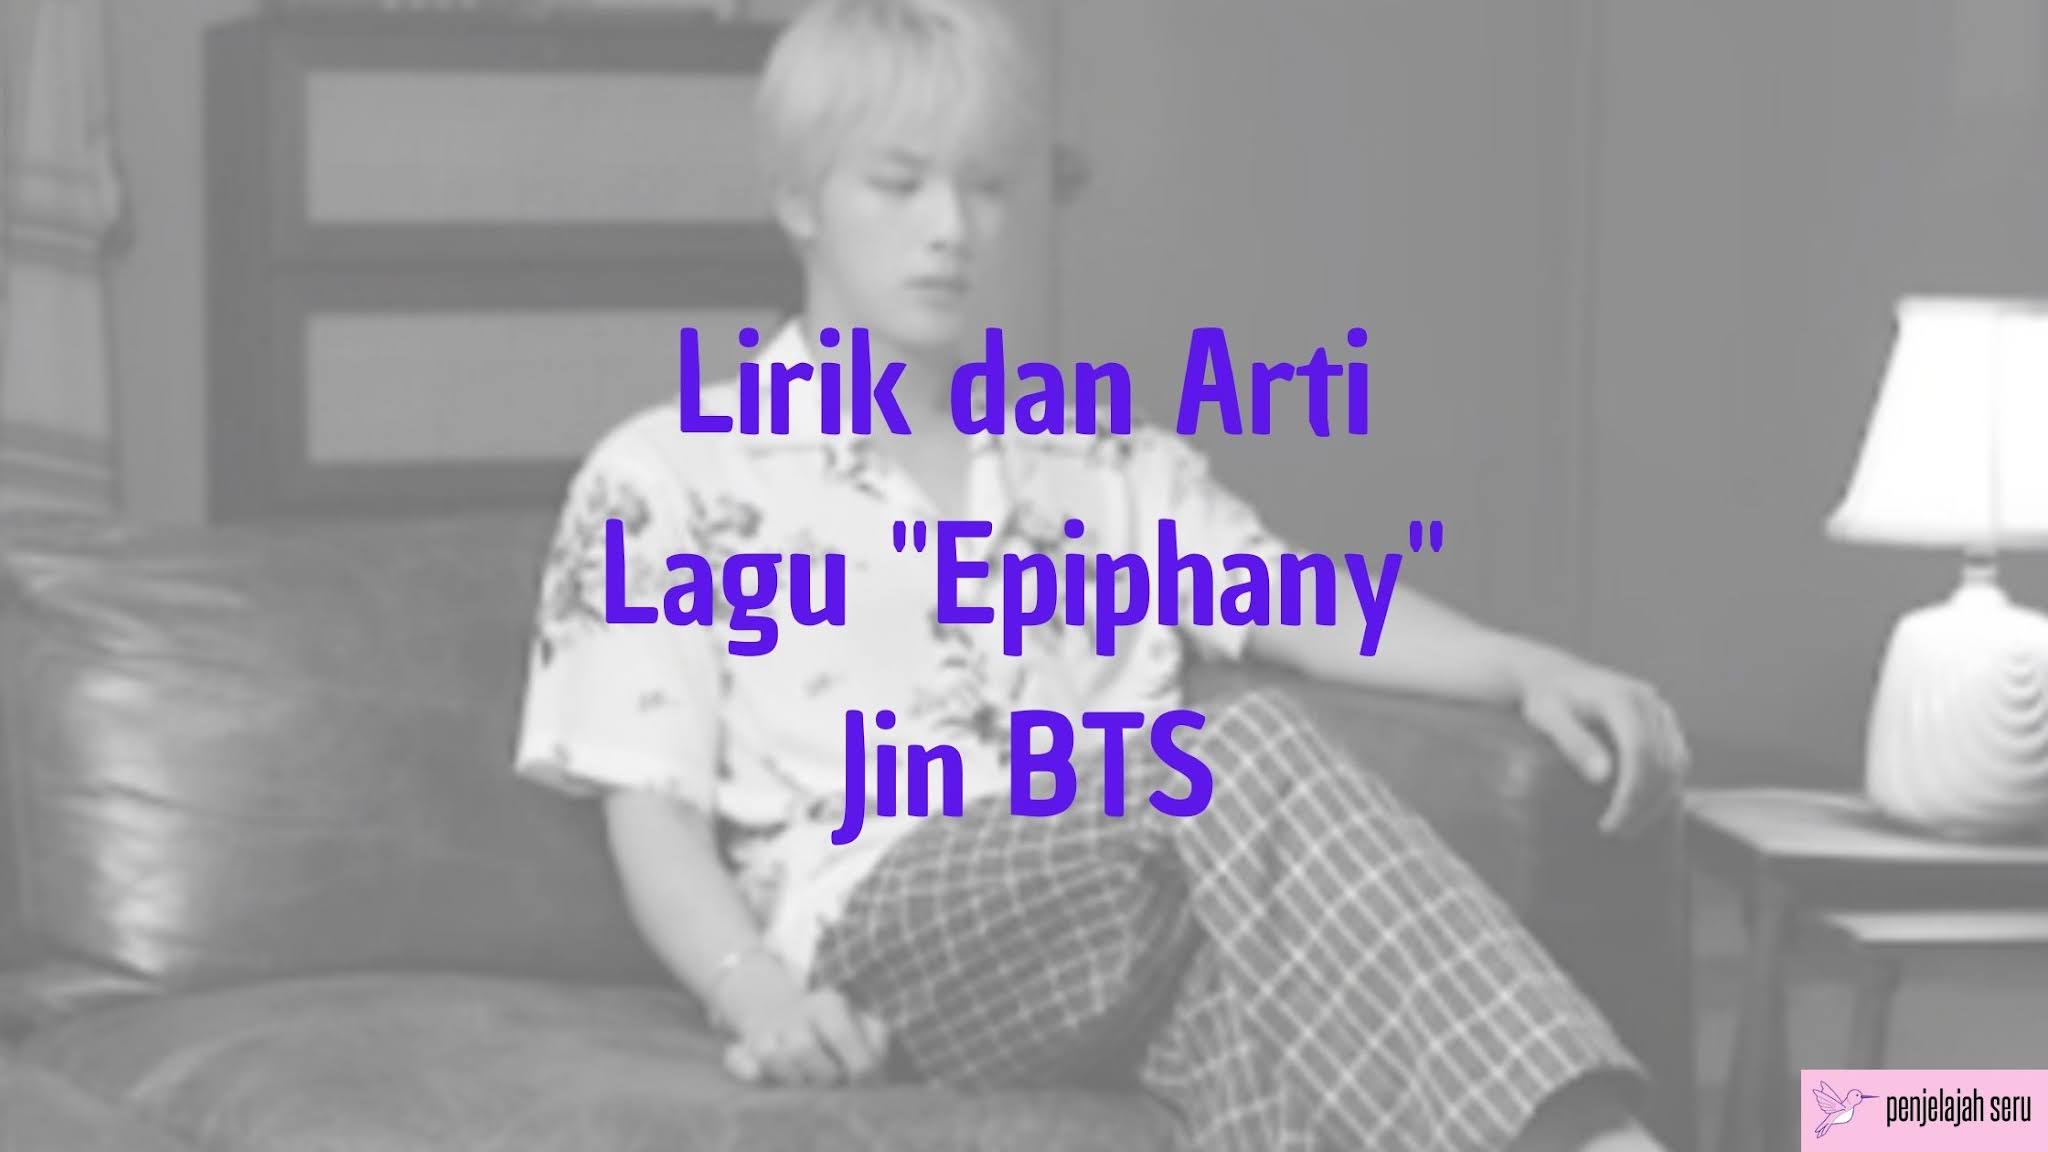 Epiphany Jin BTS